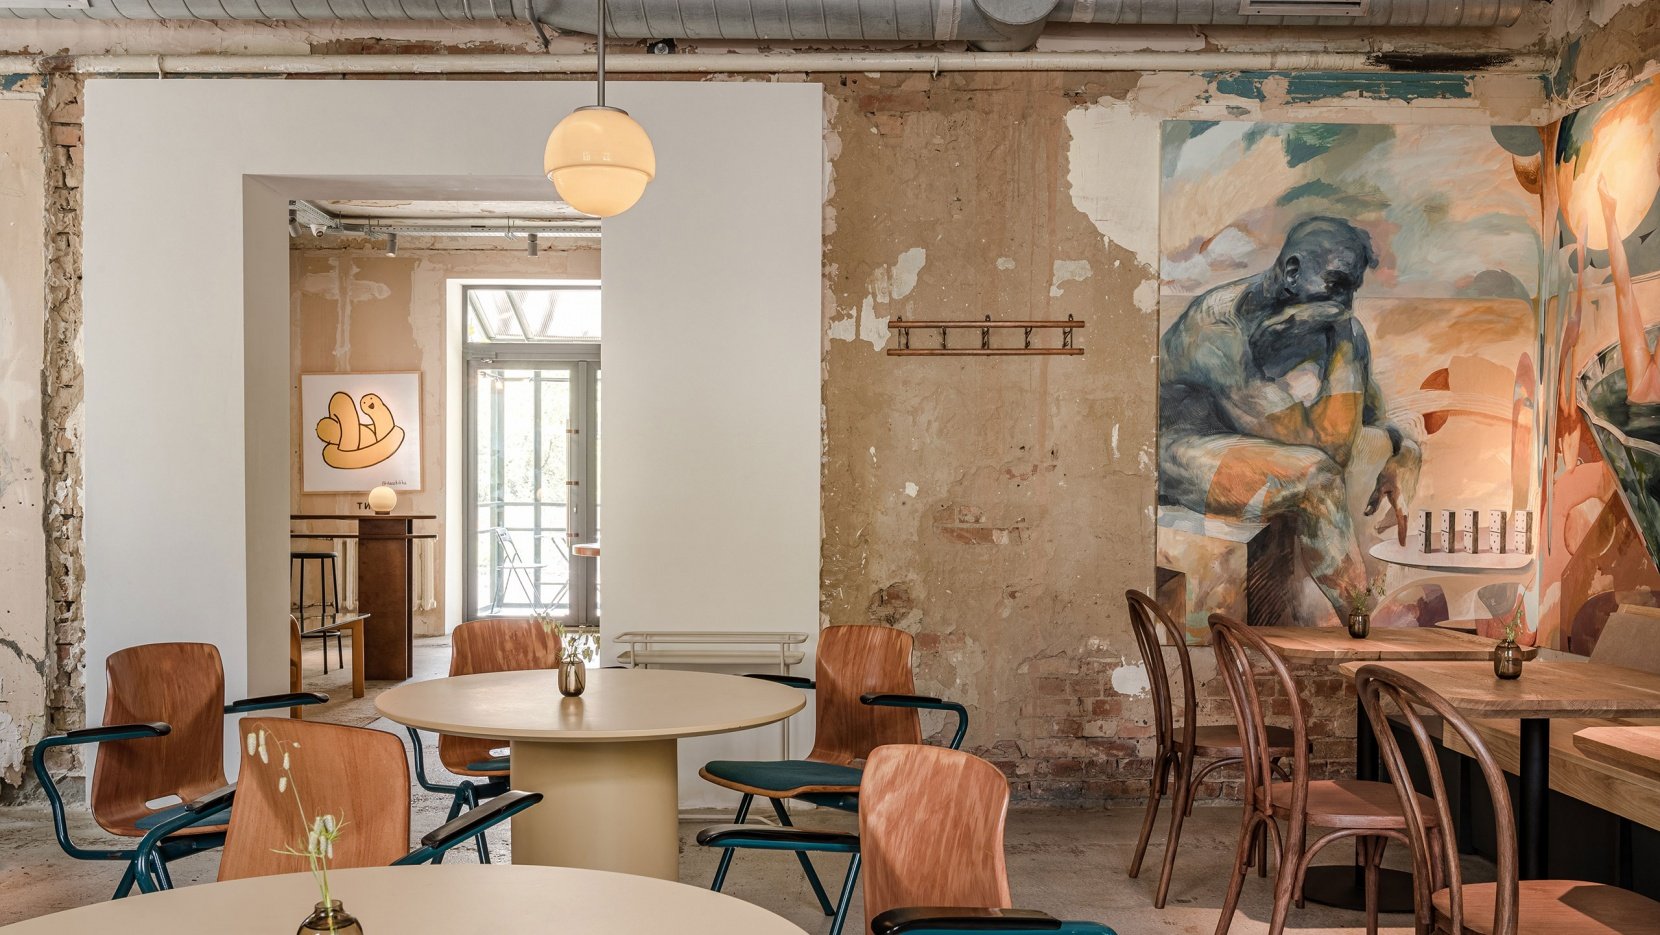 乌克兰基辅Dubler咖啡馆都是复古格调魅力咖啡馆,自然、复古、柔和的色调，原始顶面，艺术笔画、裸油漆,老式真皮沙发、老式玻璃和木质咖啡桌以及 1990 年代的黄色 Lumibär 灯